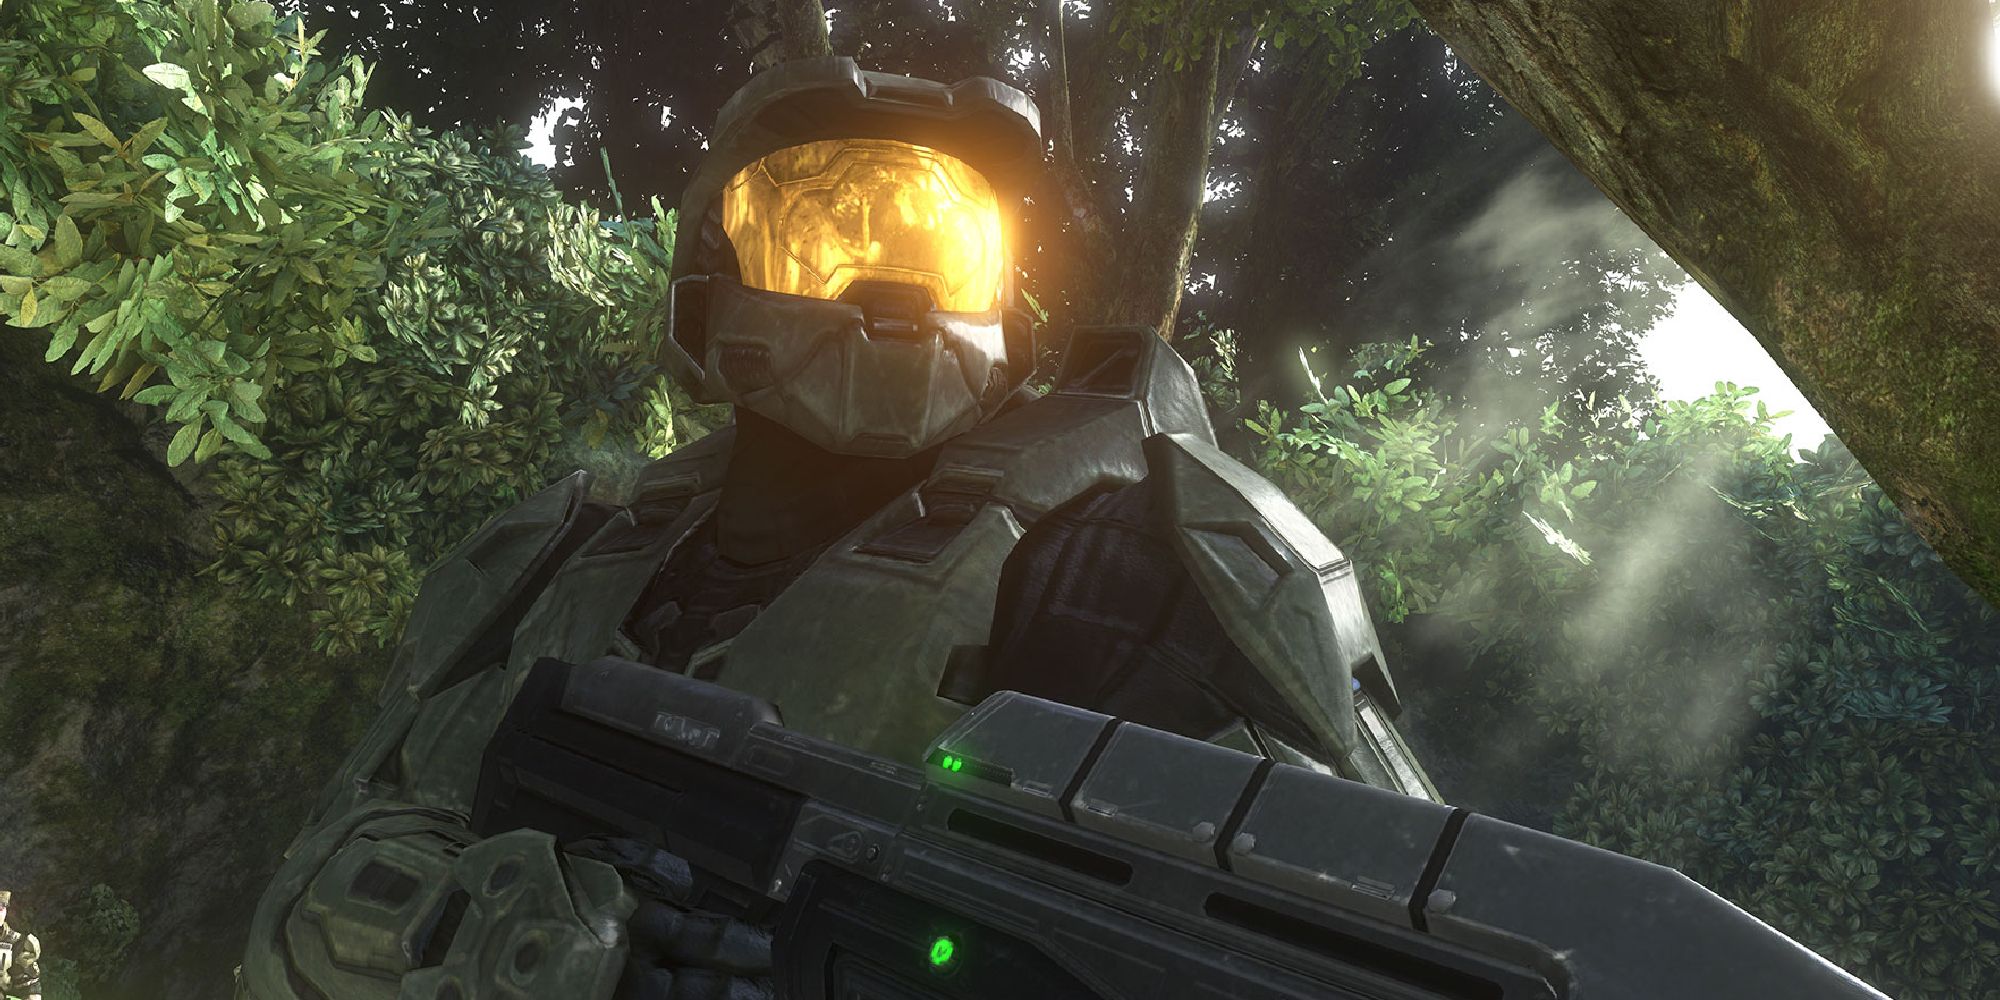 Master Chief in a Halo 3 cutscene